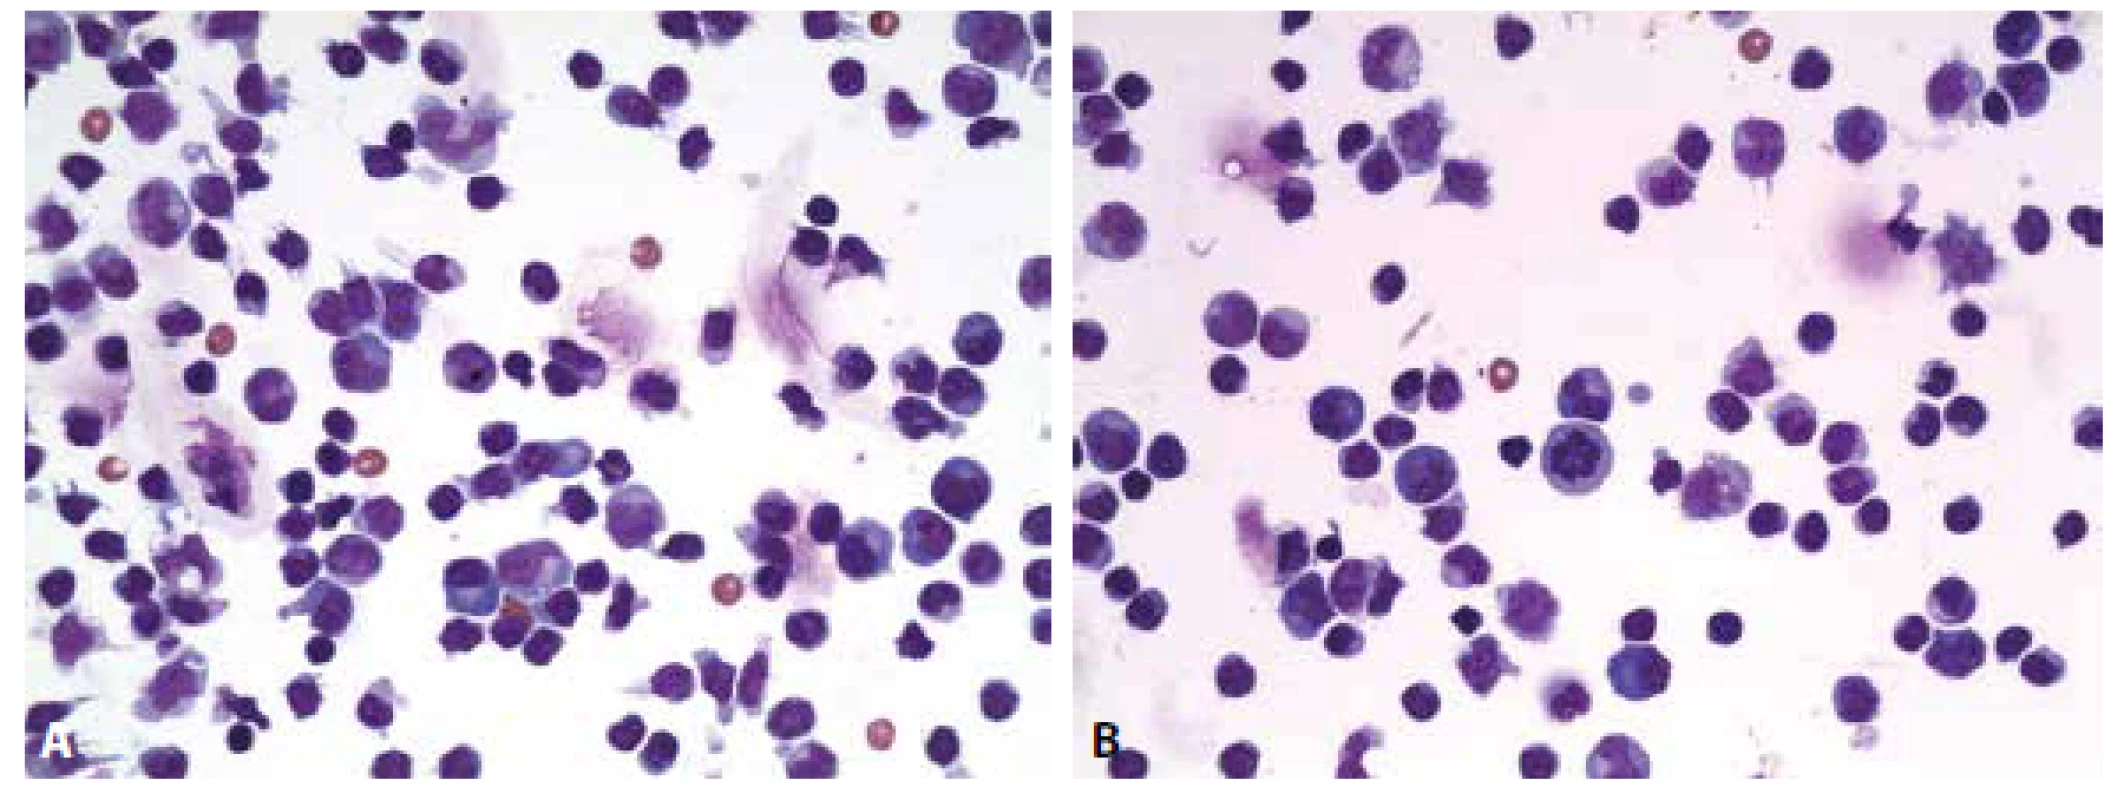 Ilustrační případ 2. Neuroborelióza. (A) Lymfocytární pleocytóza s účastí aktivovaných lymfoplazmocytárních forem a zralých plazmocytů,
monocytů. Malá příměs neutrofilních granulocytů (v centru obrázku). (B) Lymfocytární pleocytóza s účastí aktivovaných lymfoplazmocytárních
forem a zralých plazmocytů, monocytů. V centru pravidelná mitóza.